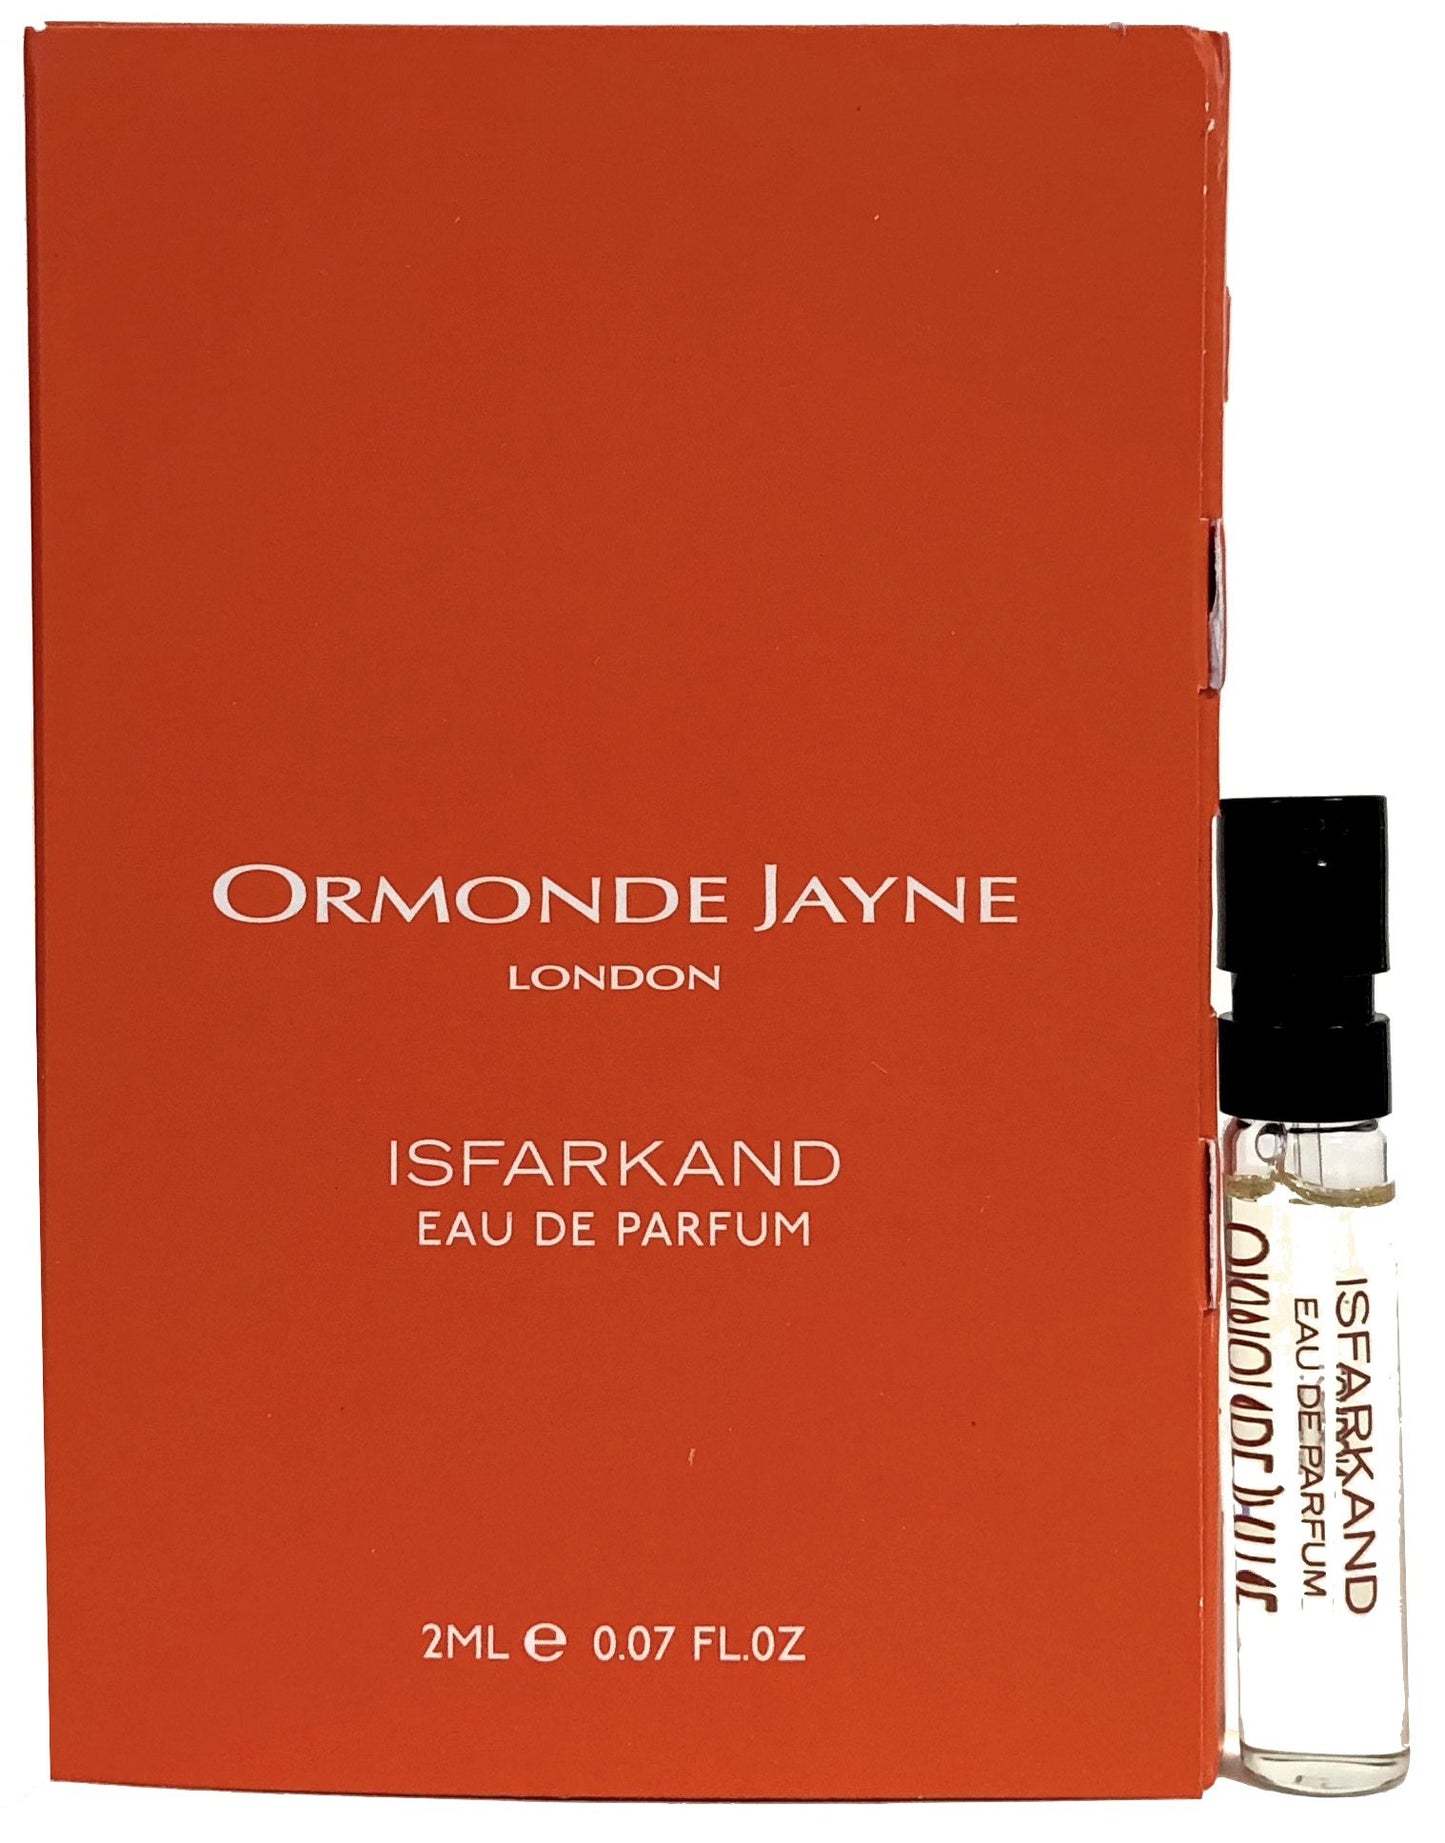 Ormonde Jayne Isfarkand 2ml virallisia hajuvesinäytteitä